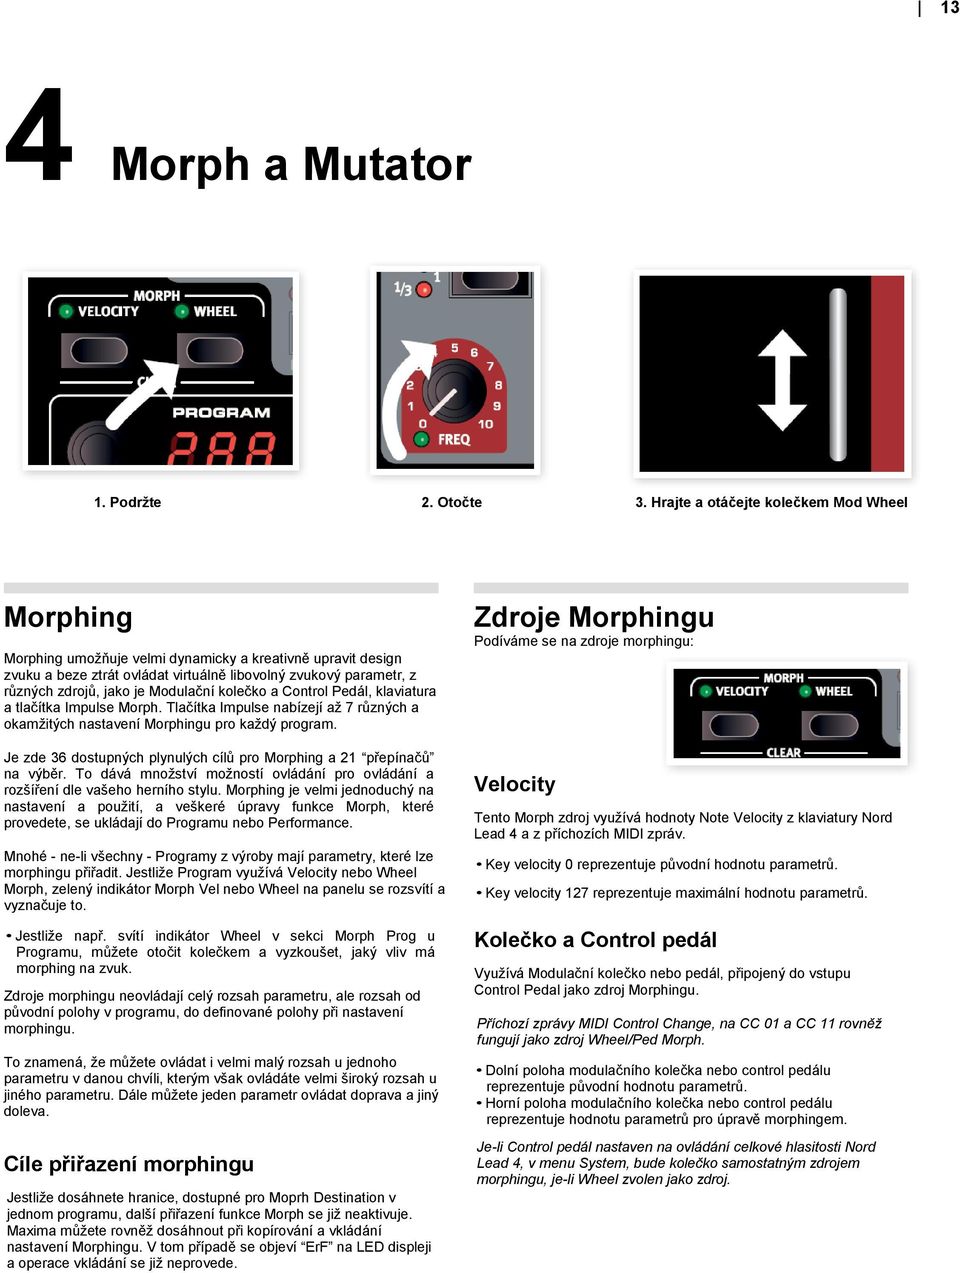 Modulační kolečko a Control Pedál, klaviatura a tlačítka Impulse Morph. Tlačítka Impulse nabízejí až 7 různých a okamžitých nastavení Morphingu pro každý program.